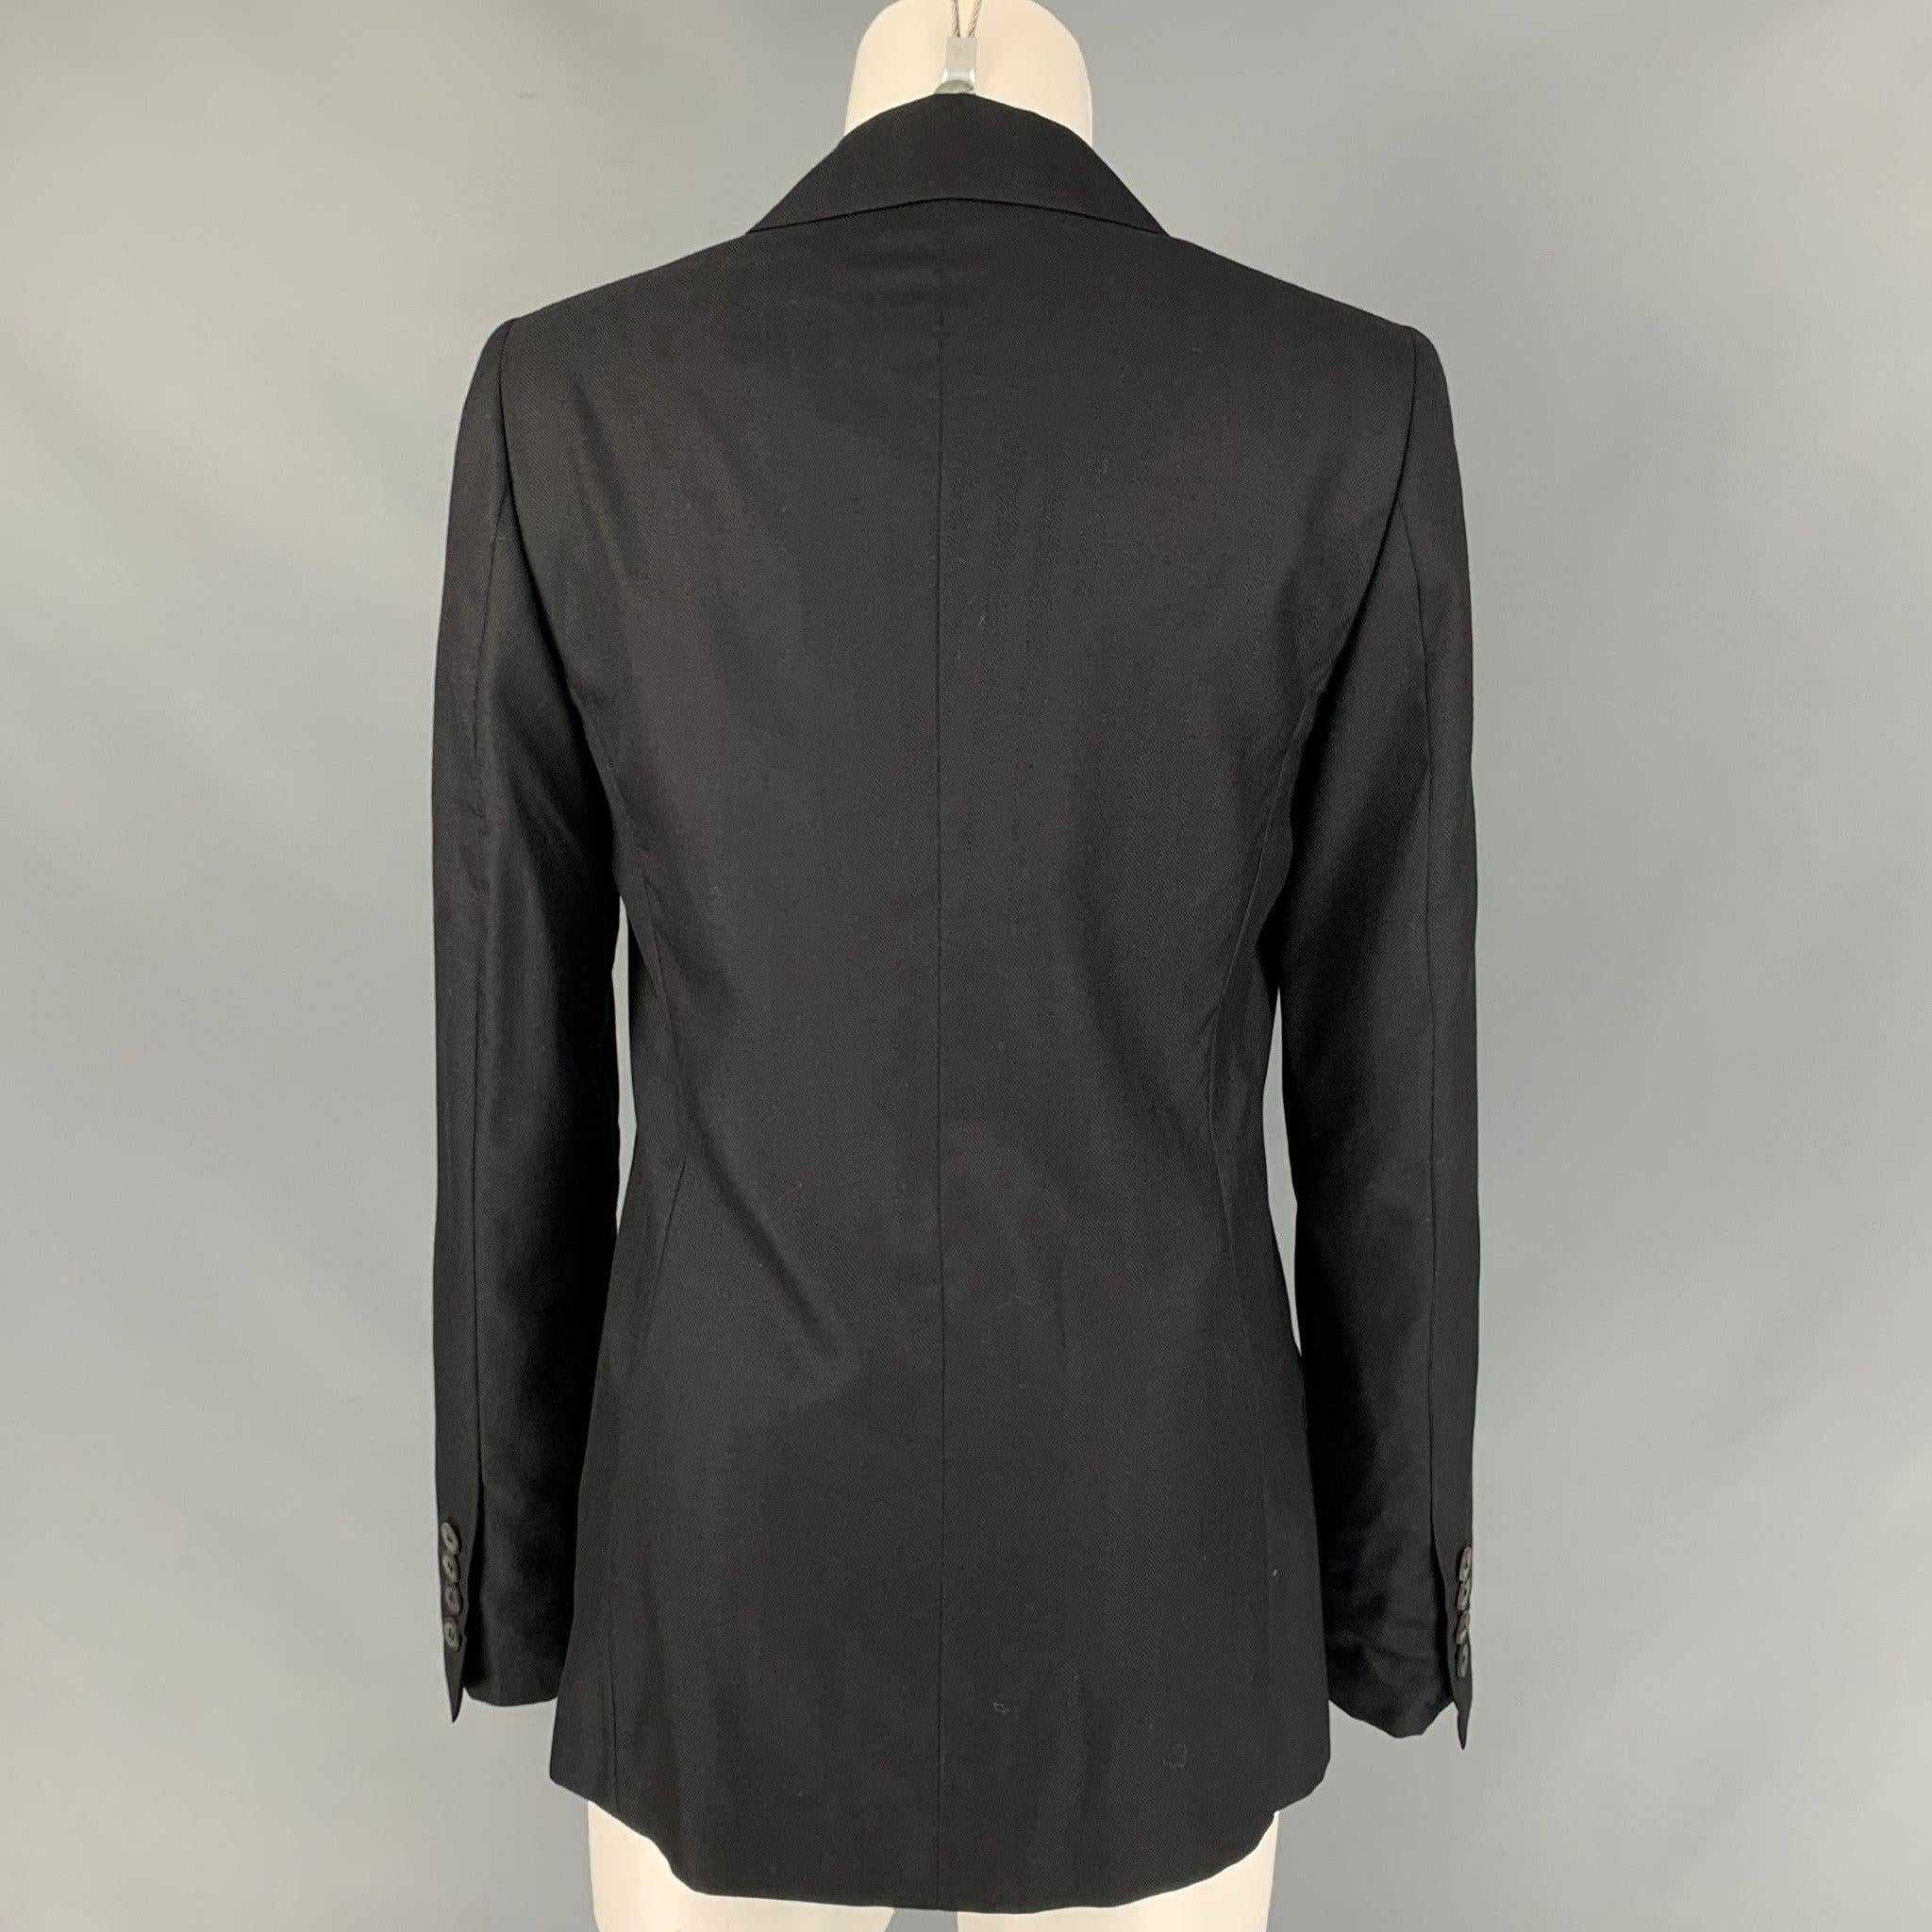 CALVIN KLEIN COLLECTION Size 6 Black Cashmere / Silk Jacke Blazer 1